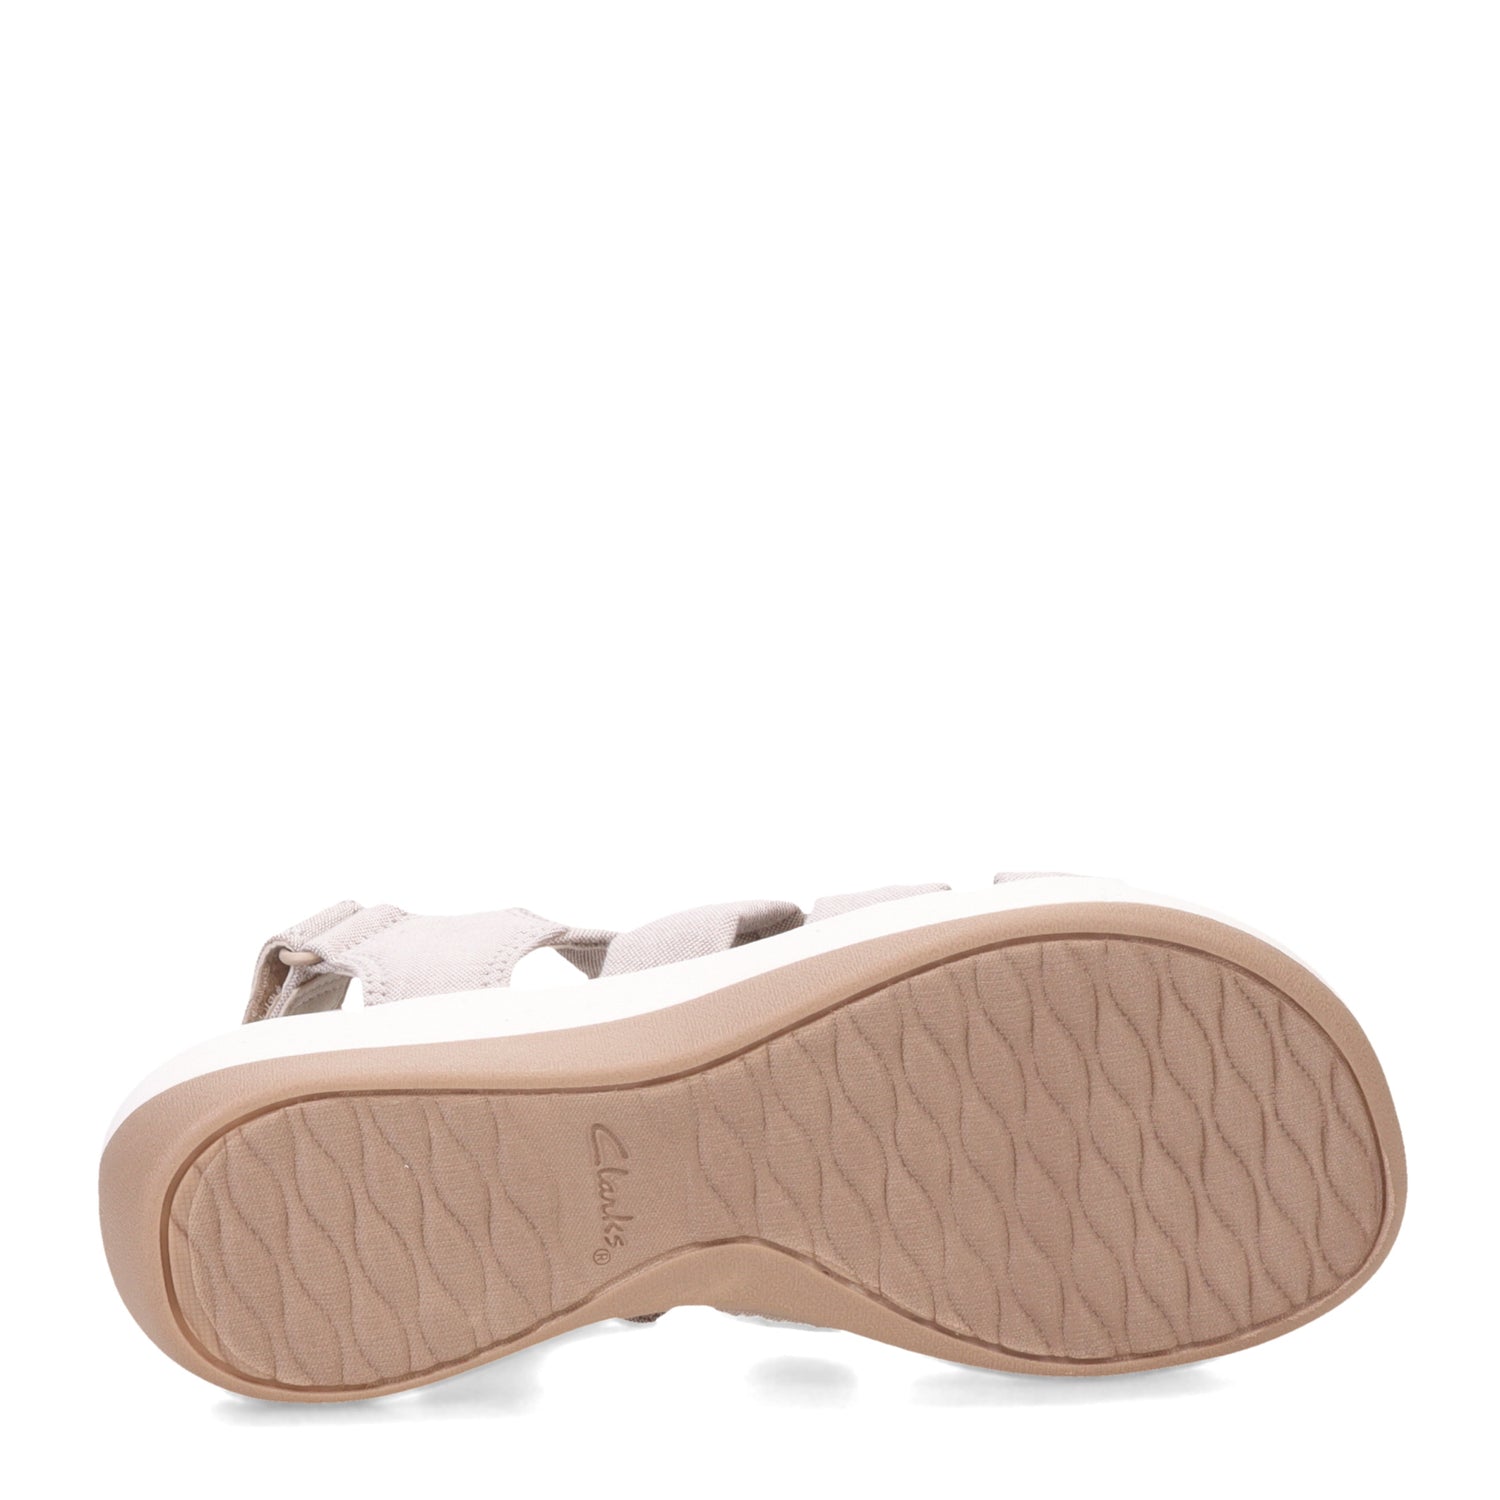 Peltz Shoes  Women's Clarks Arla Fern Sandal Sand 26172932